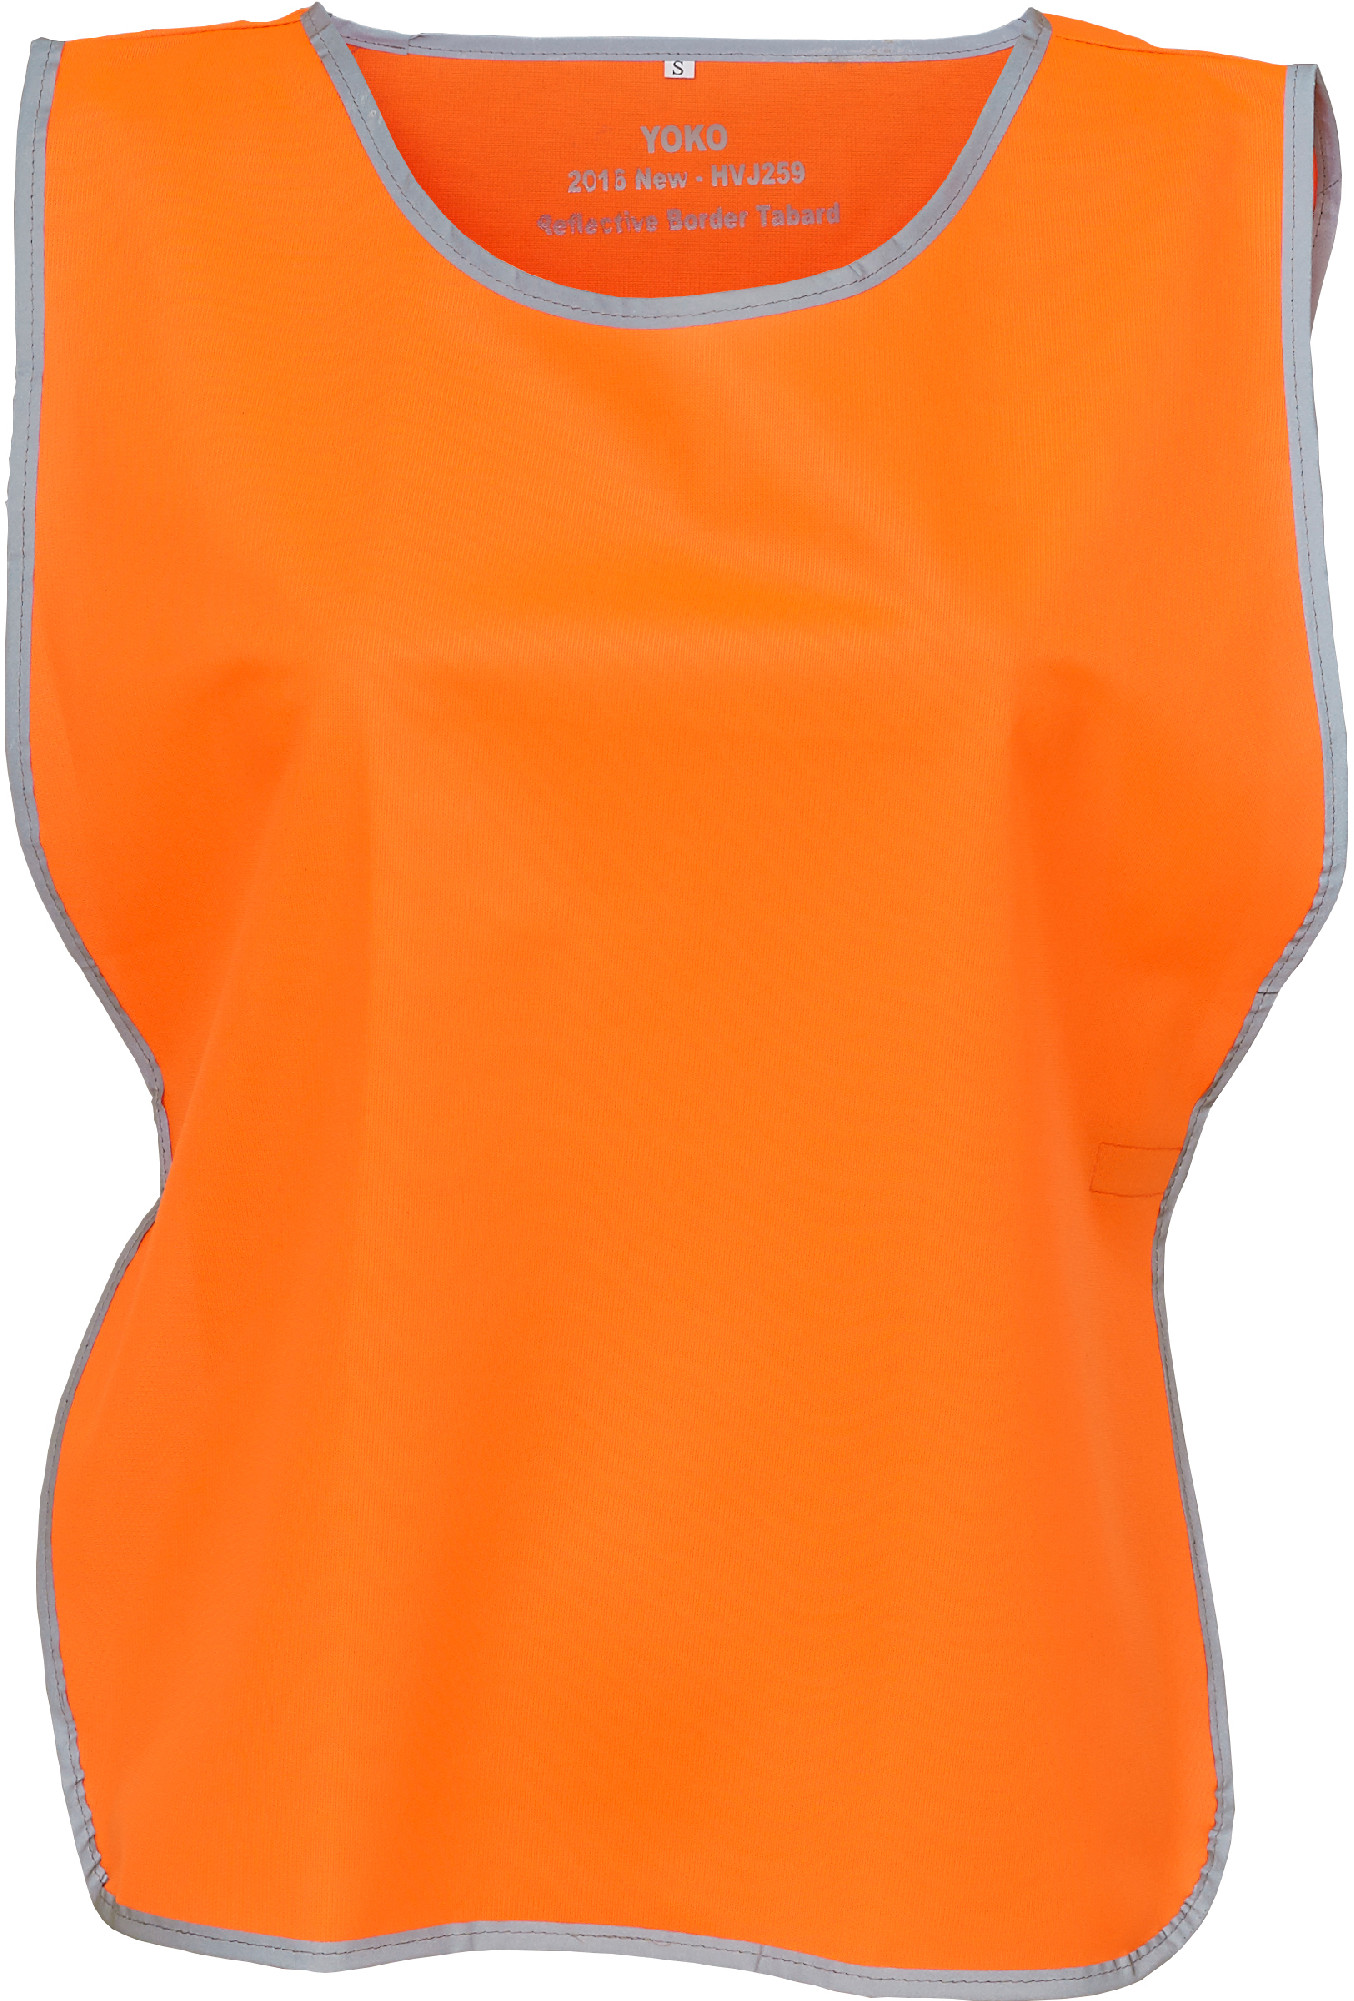 Reflexní vesta Fluo HVJ259 Barva: fluorescenční oranžová, Velikost: L/XL